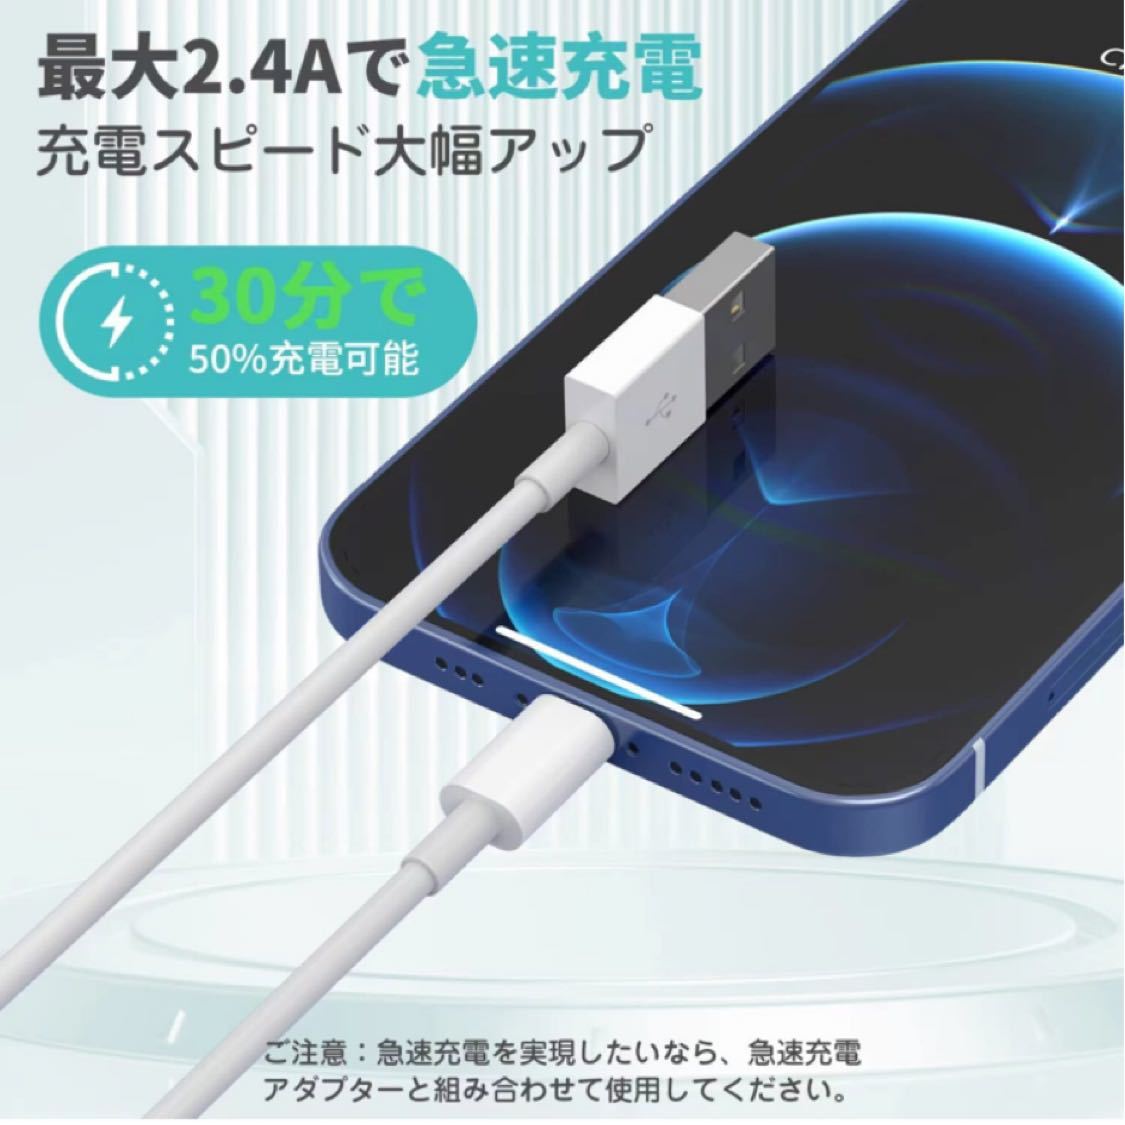 【最新進化モデル 2M2本セット】iphone 充電ケーブル ライトニングケーブル iphone 充電器 lightningケーブル 急速充電の画像3